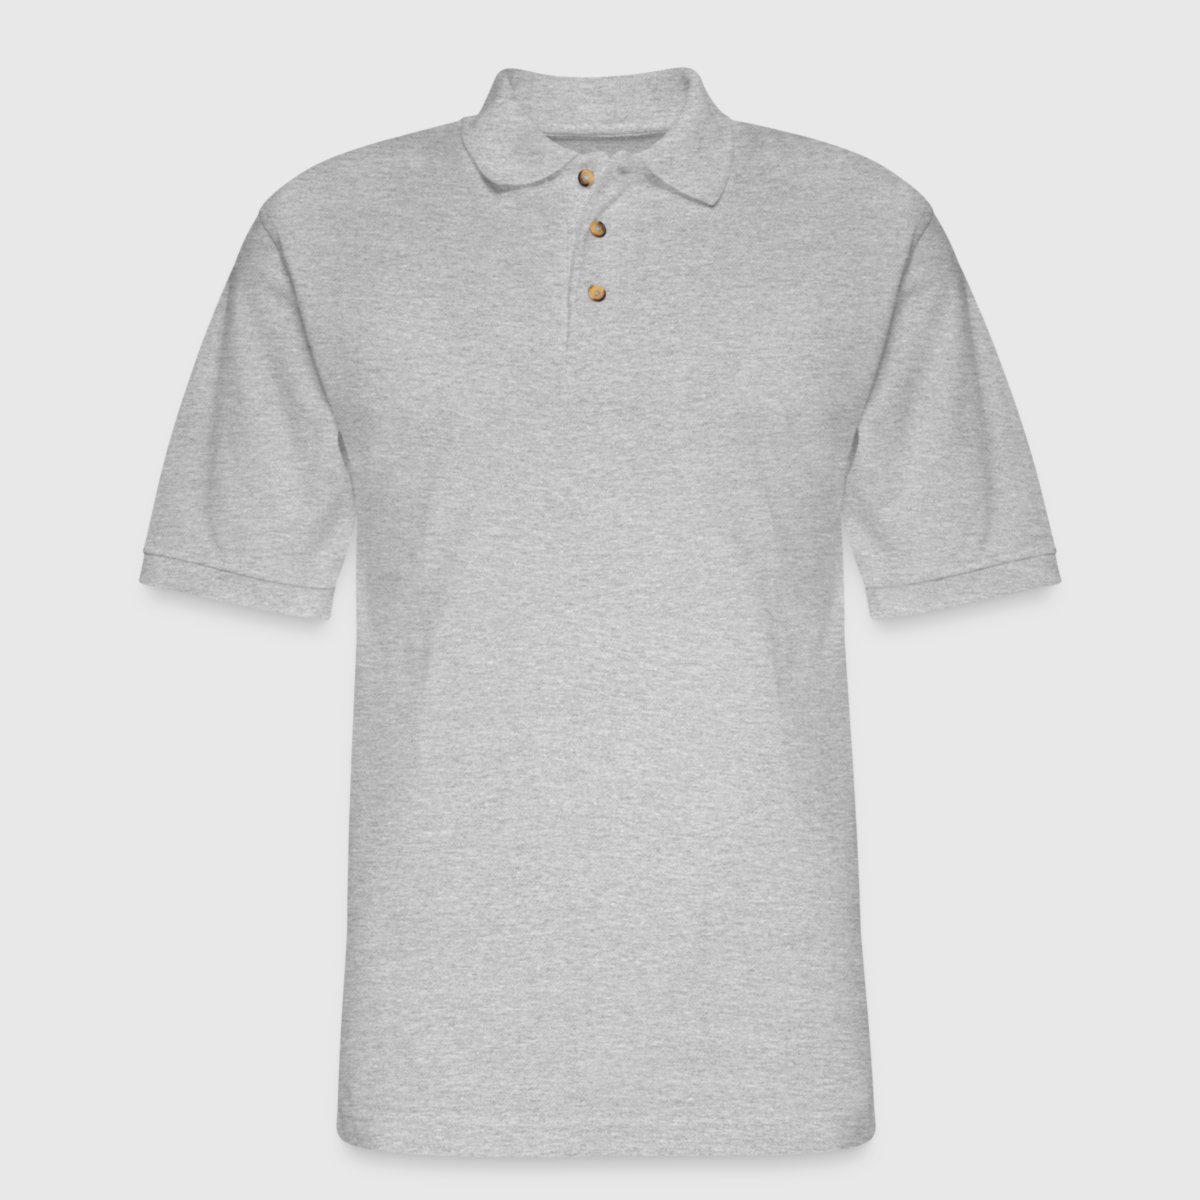 Men's Pique Polo Shirt - Front